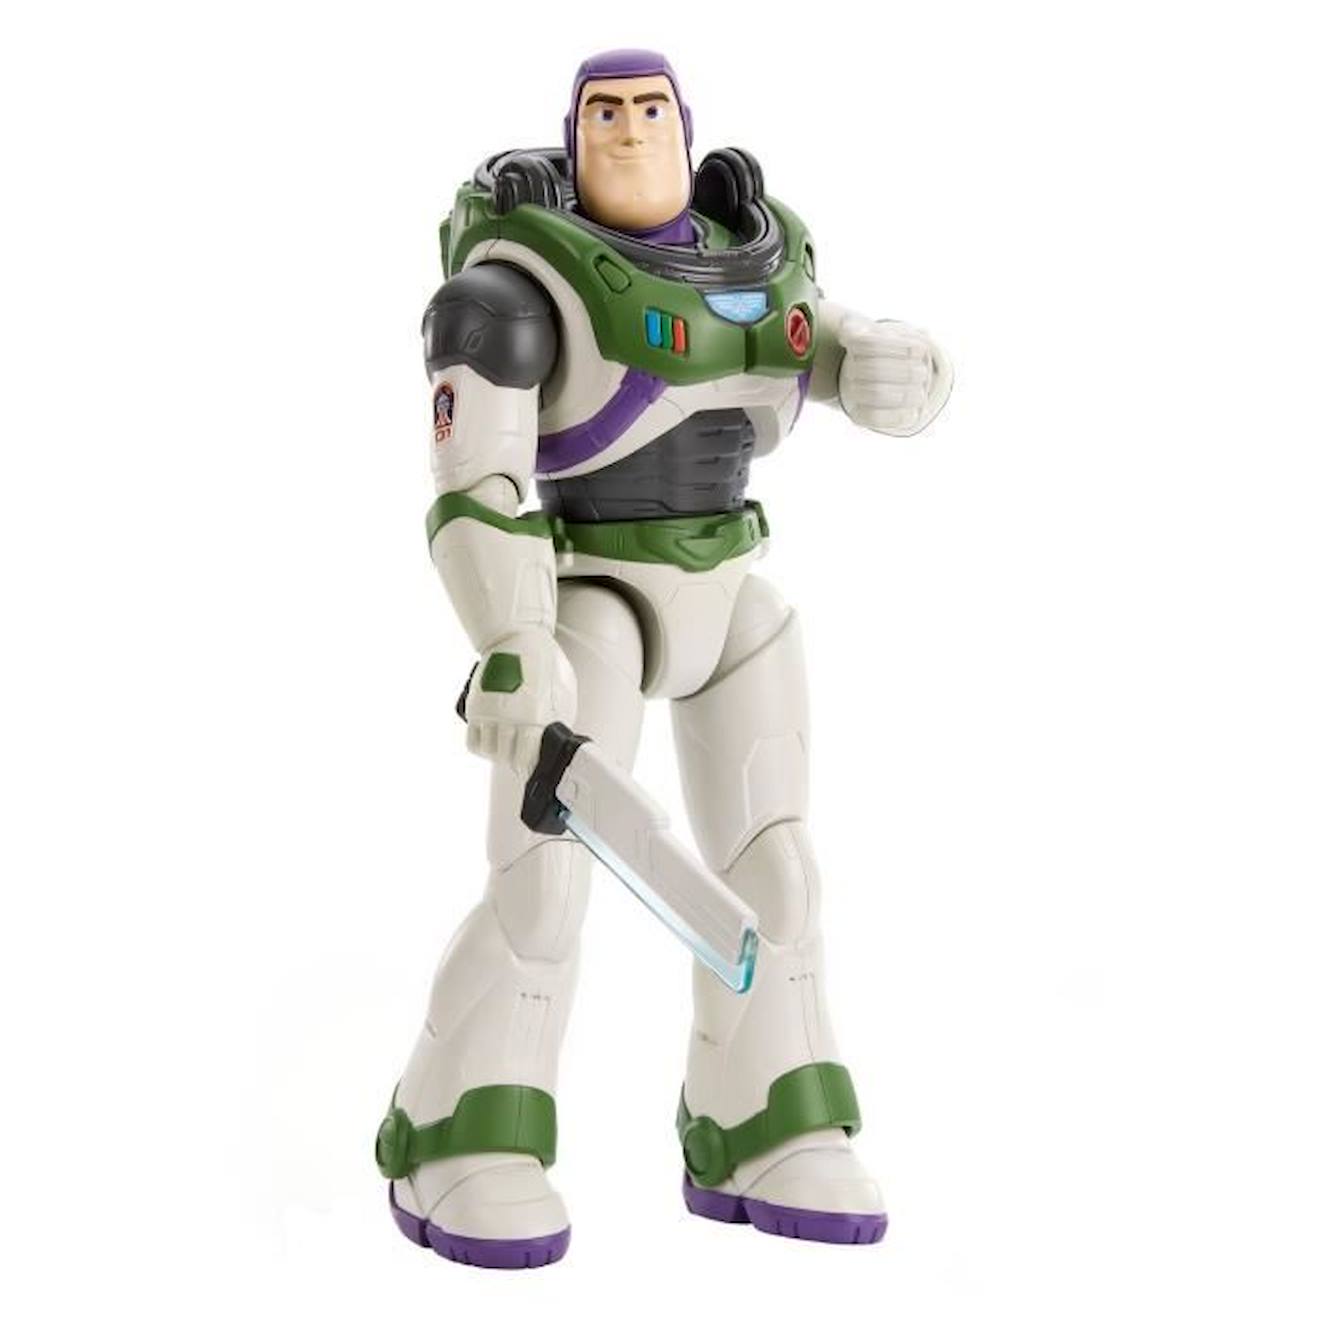 Figurine parlante Buzz l'éclair - Disney Toy Story - Dès 3 ans